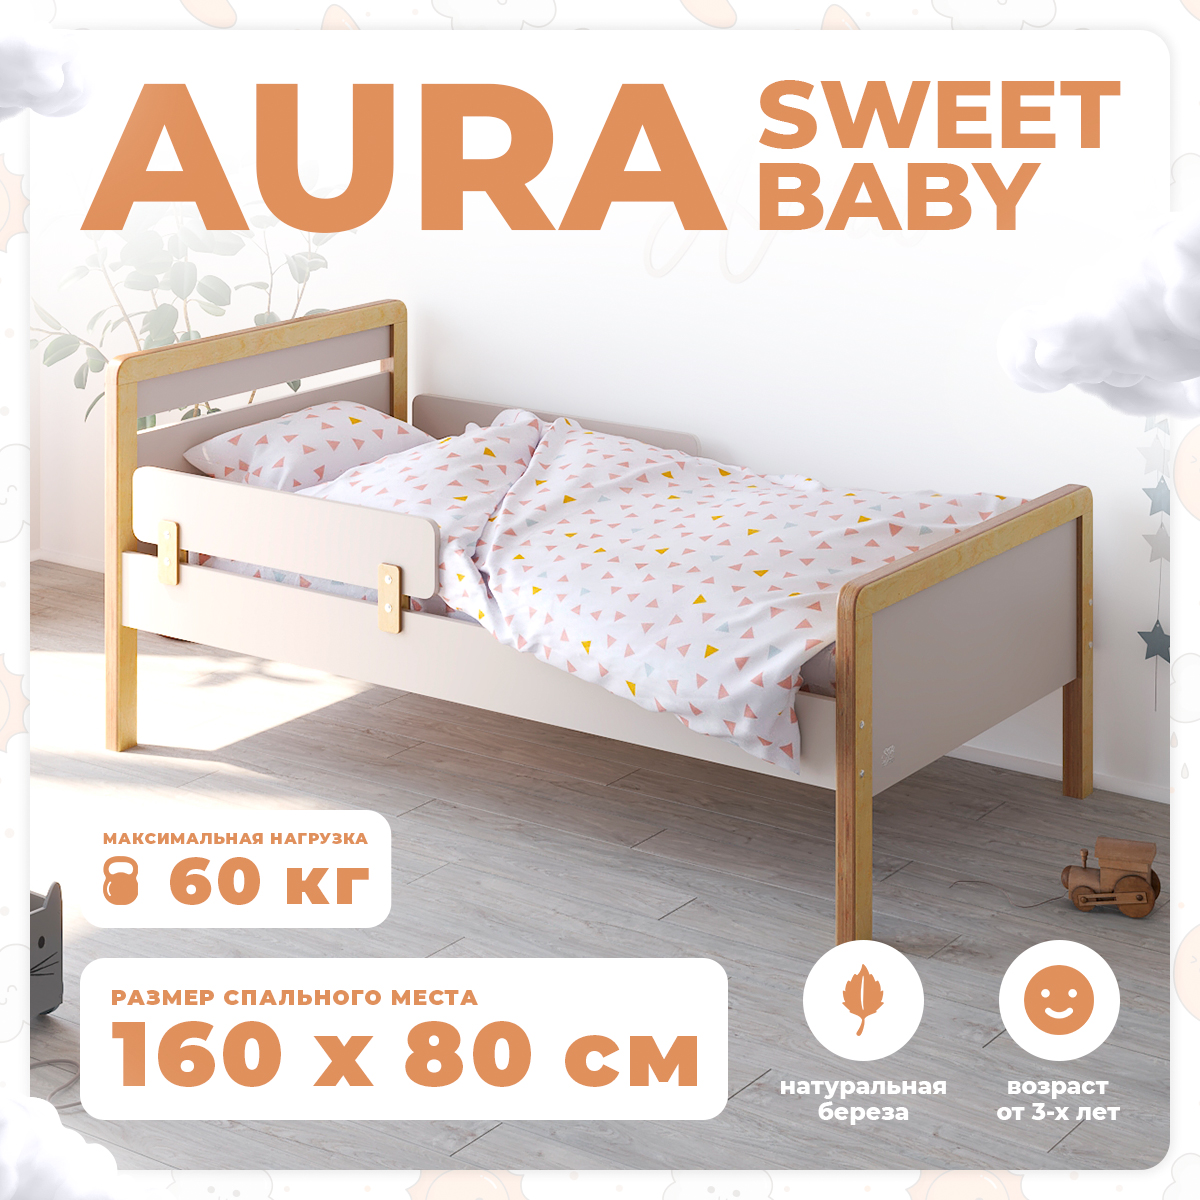 Кровать подростковая Sweet Baby Aura NaturaleСachemire кровать подростковая sweet baby aura naturalebianco